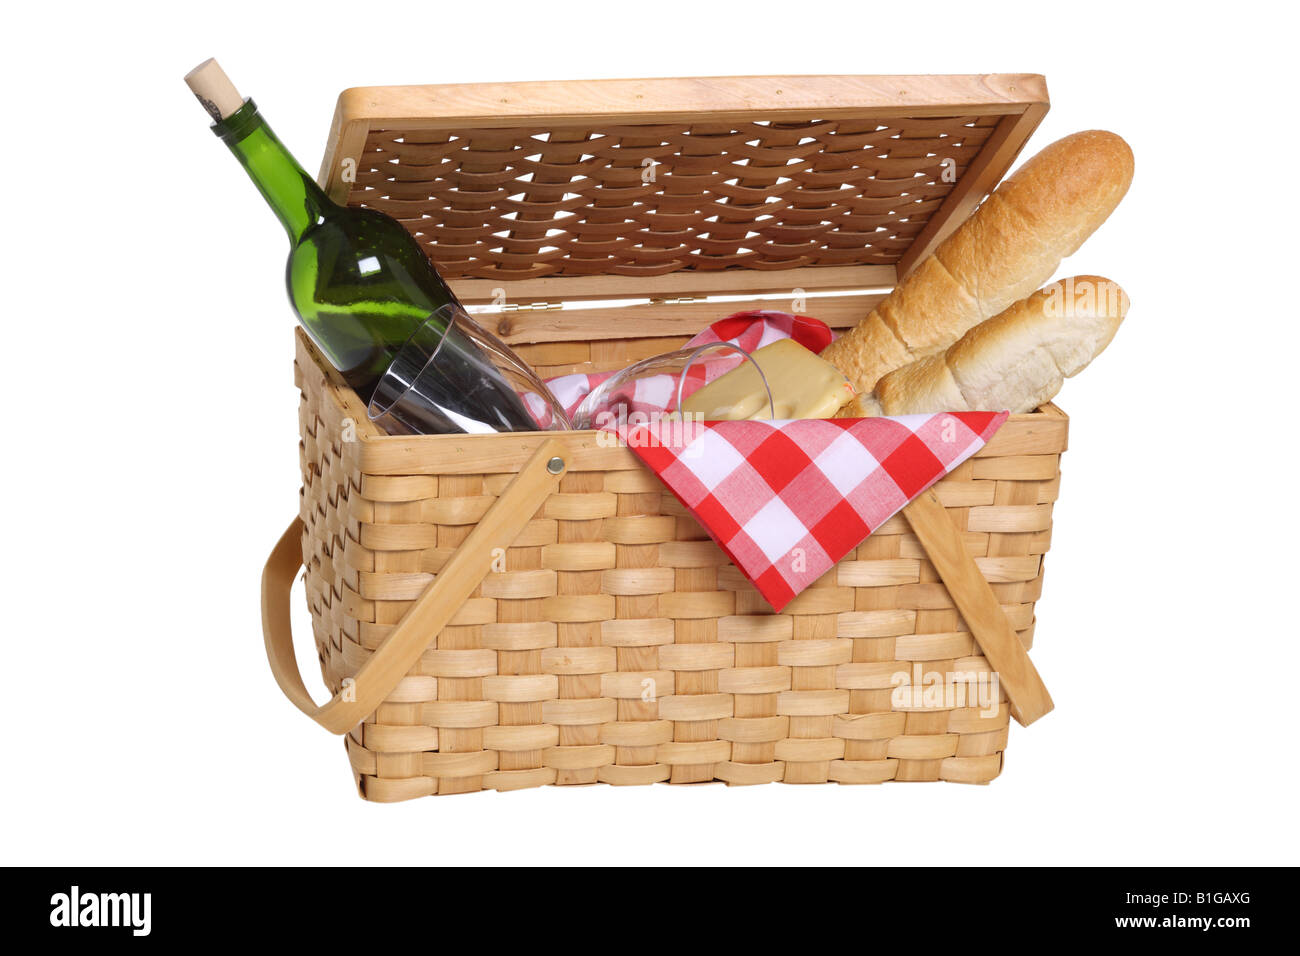 Picknick-Korb mit Wein und Brot schneiden Sie auf weißem Hintergrund  Stockfotografie - Alamy